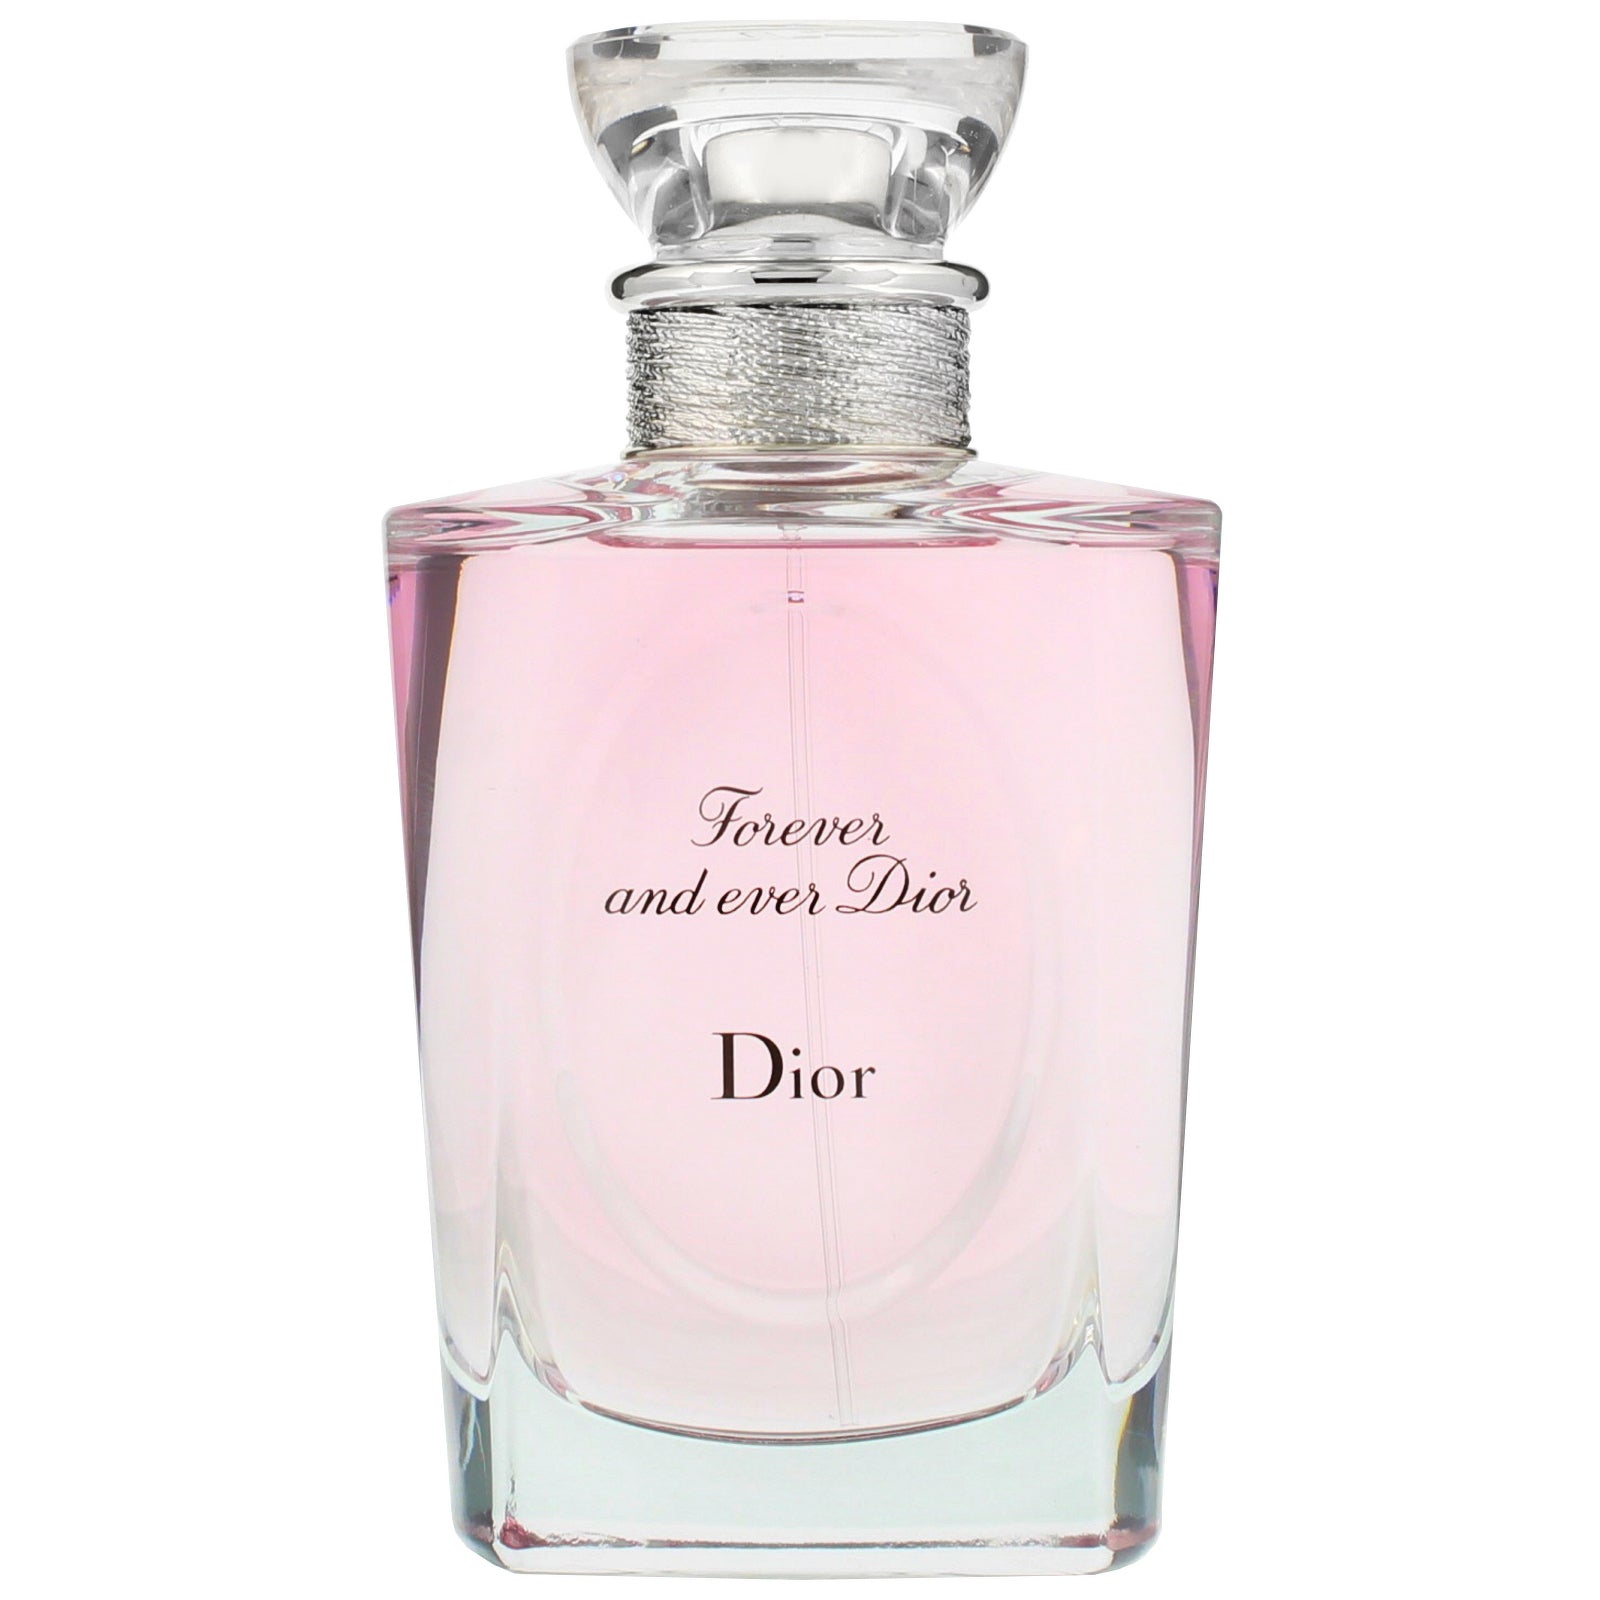 Les Créations de Monsieur Dior Eau de Toilette Spray Forever and Ever by  DIOR  Buy online  parfumdreams